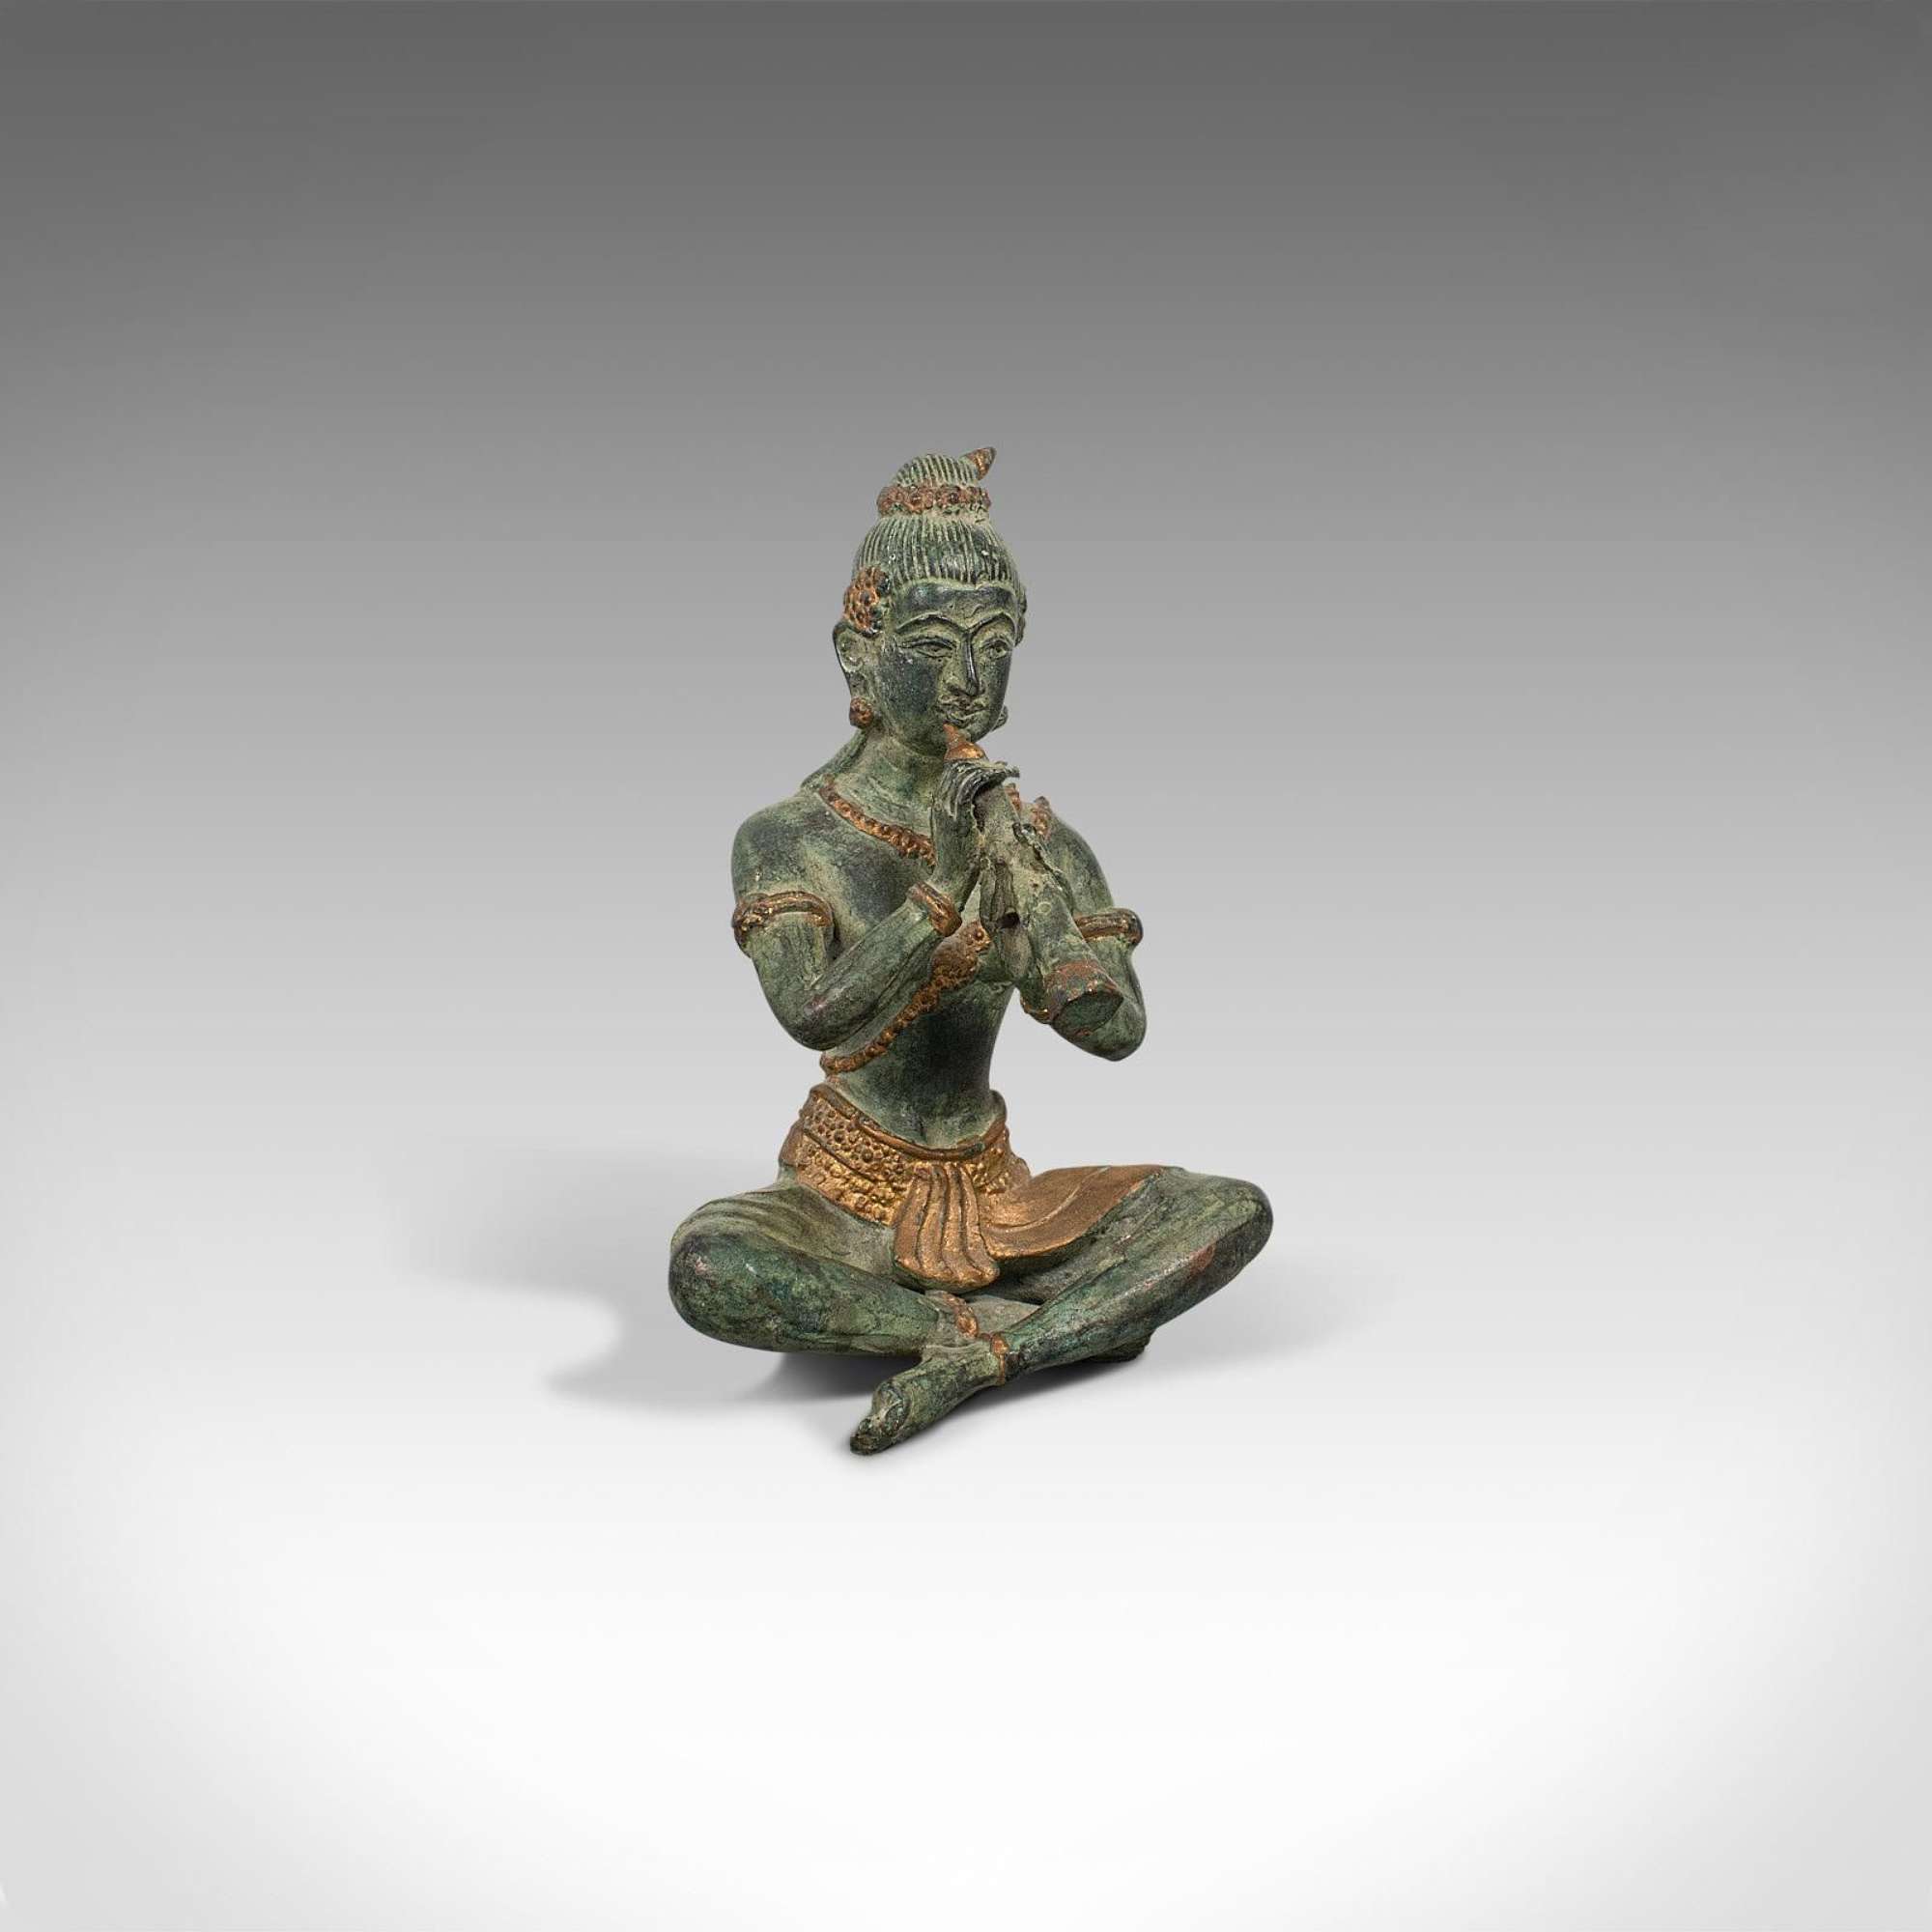 Antique Decorative Figure, Oriental, Bronze, Statue, Study, Musician C.1900